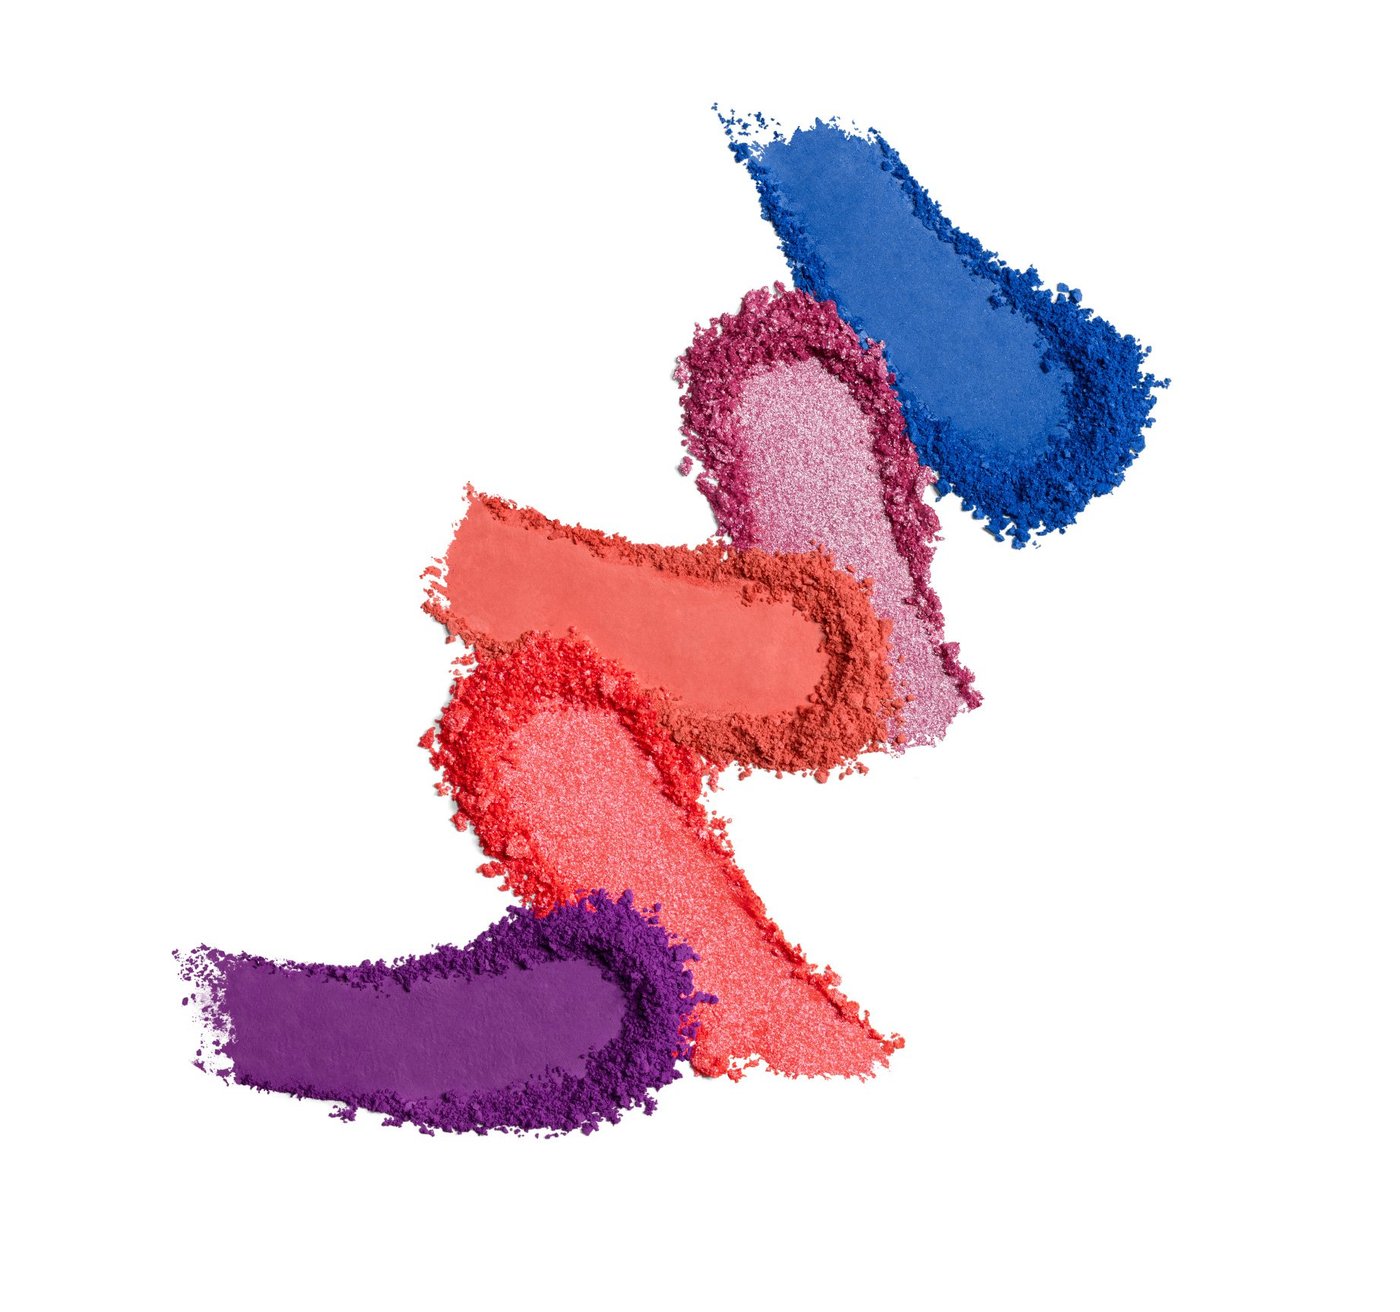 Morphe X Lisa Frank 35B By Lisa Frank Artistry Palette - Zoomer & Zorbit™